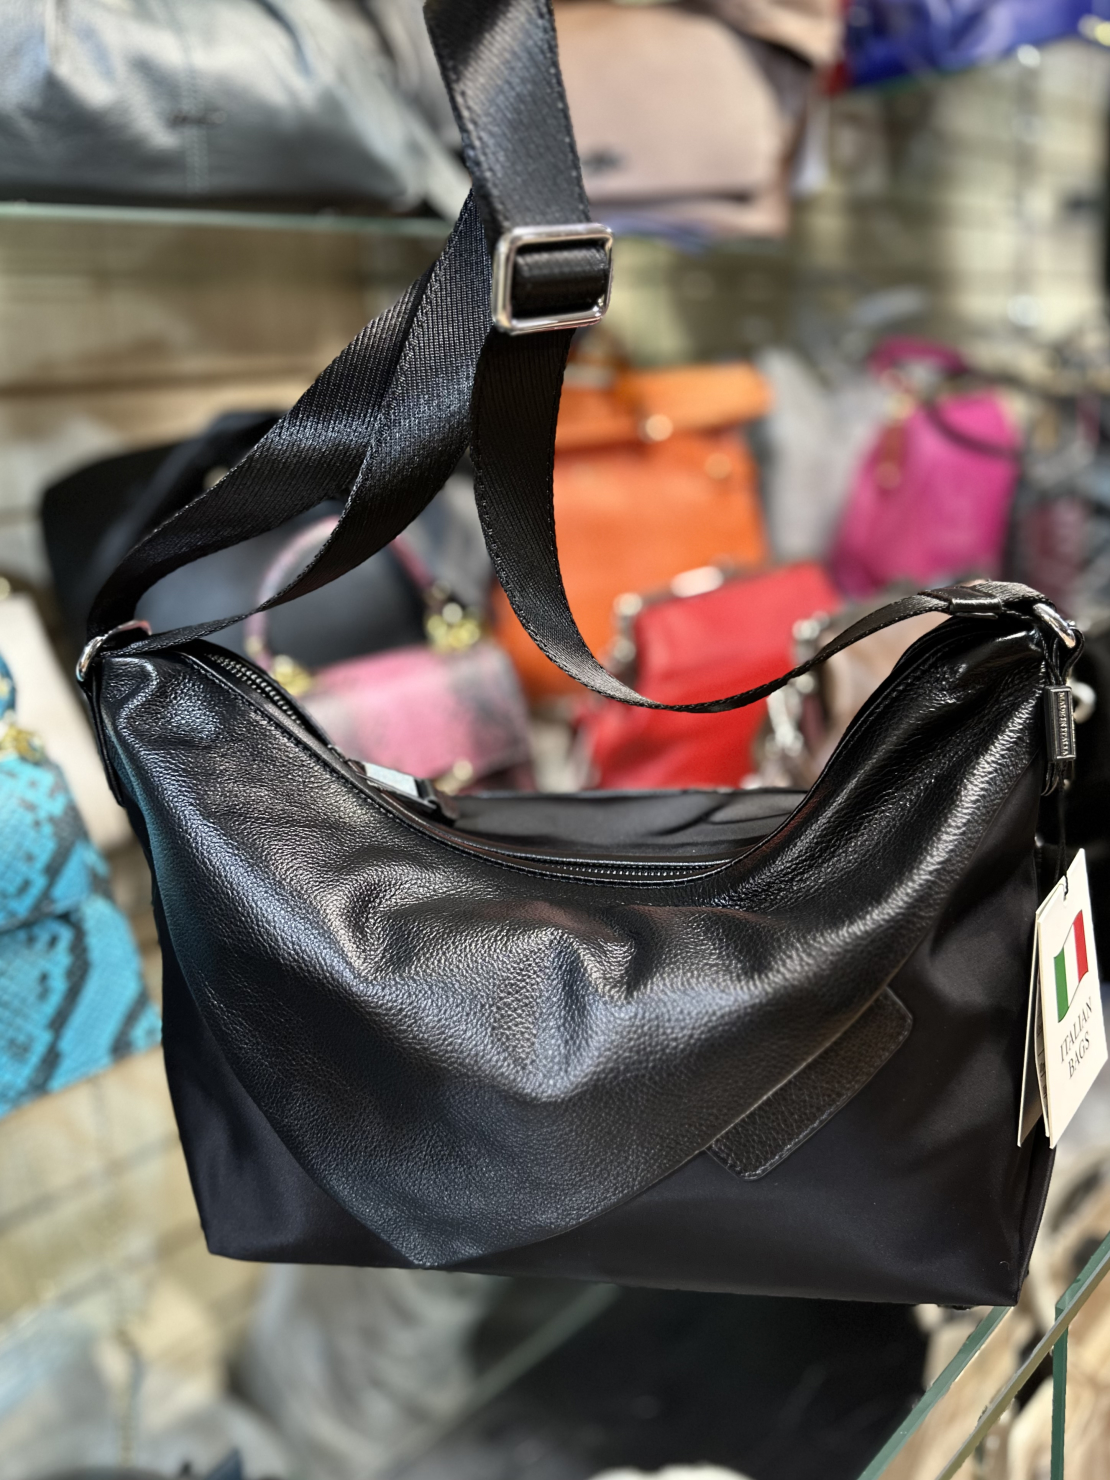 Купить женскую итальянскую сумку мешок из текстиля и натуральной кожи в  интернет магазине с оплатой при получении | Marie bags store